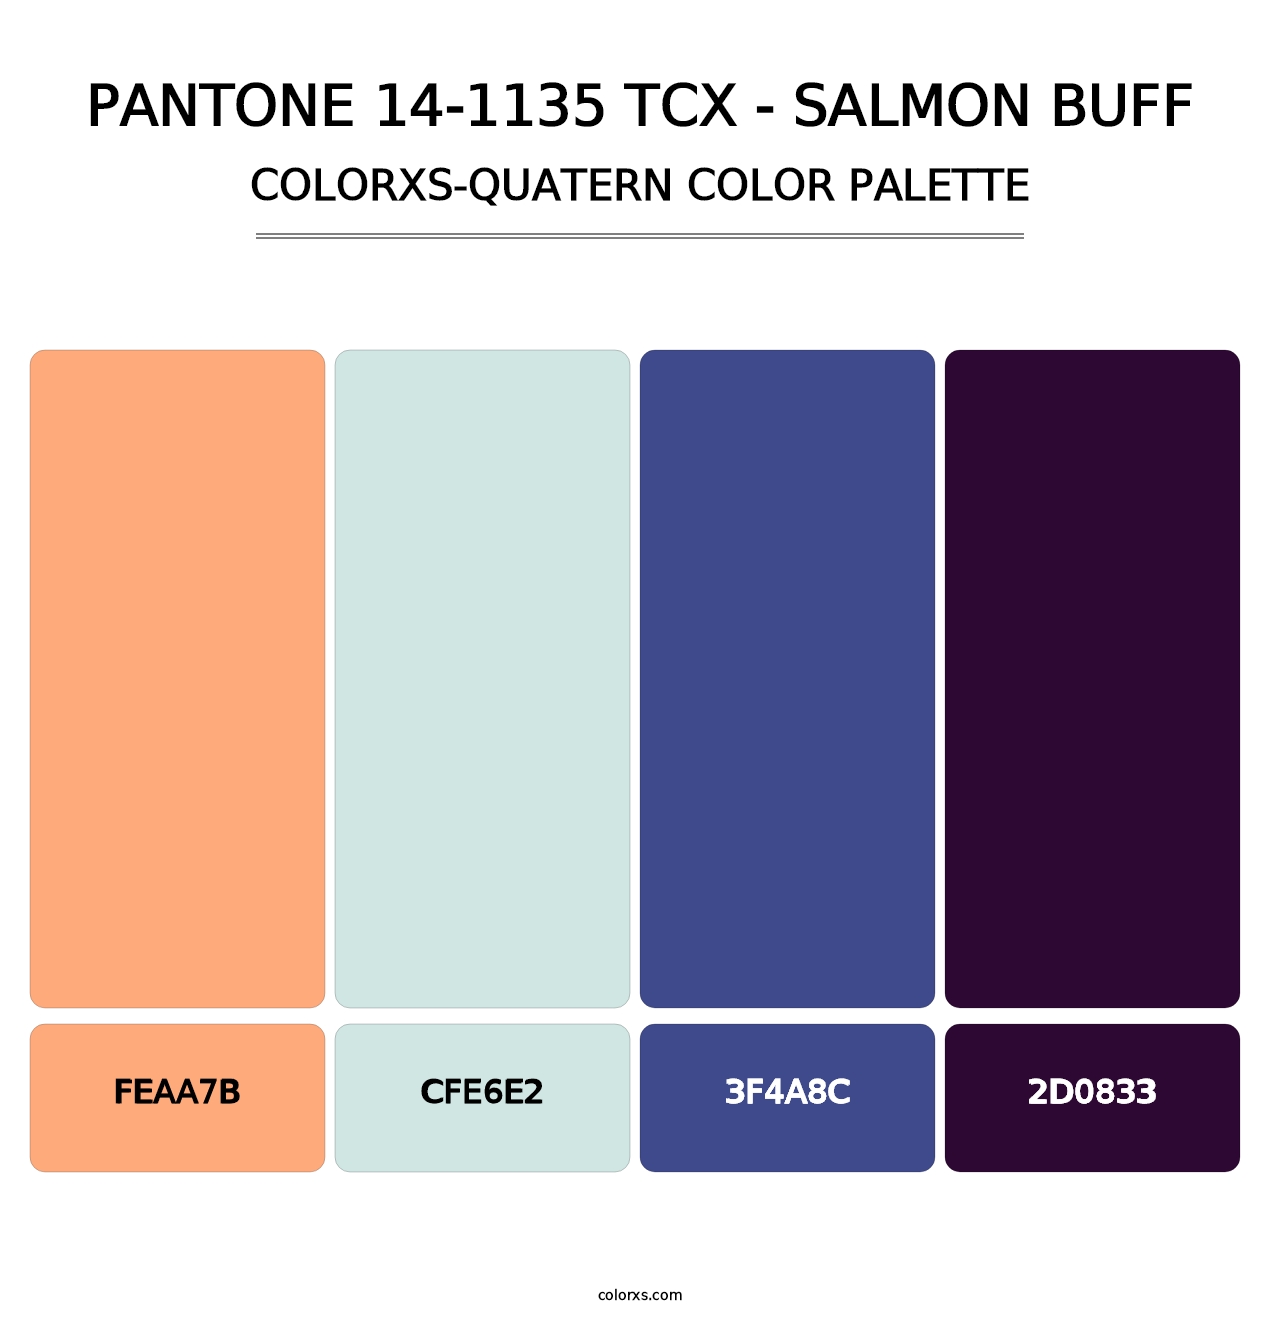 PANTONE 14-1135 TCX - Salmon Buff - Colorxs Quatern Palette